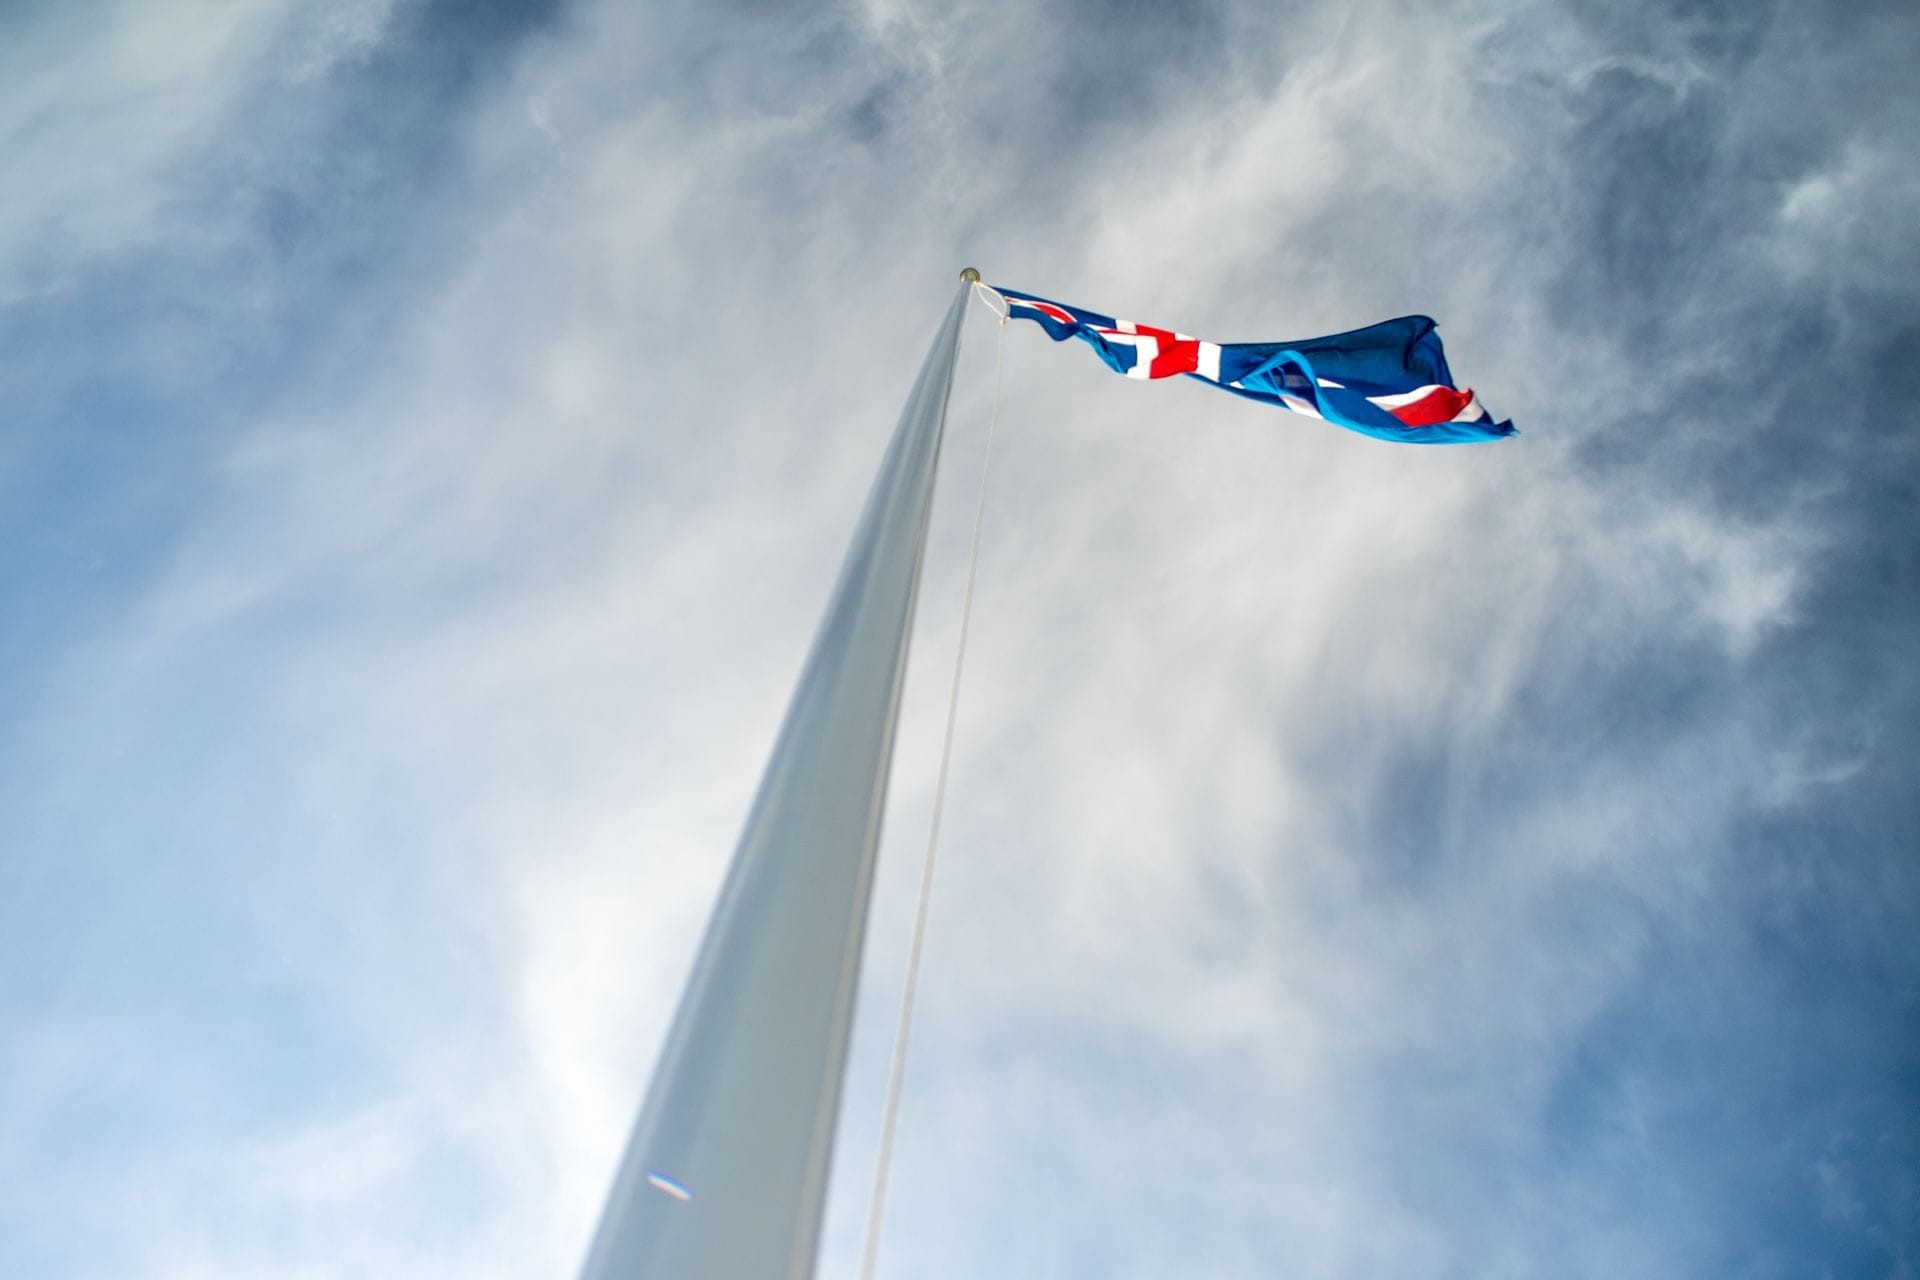 Bandiera islandese fluttuante nell'aria, cielo blu.